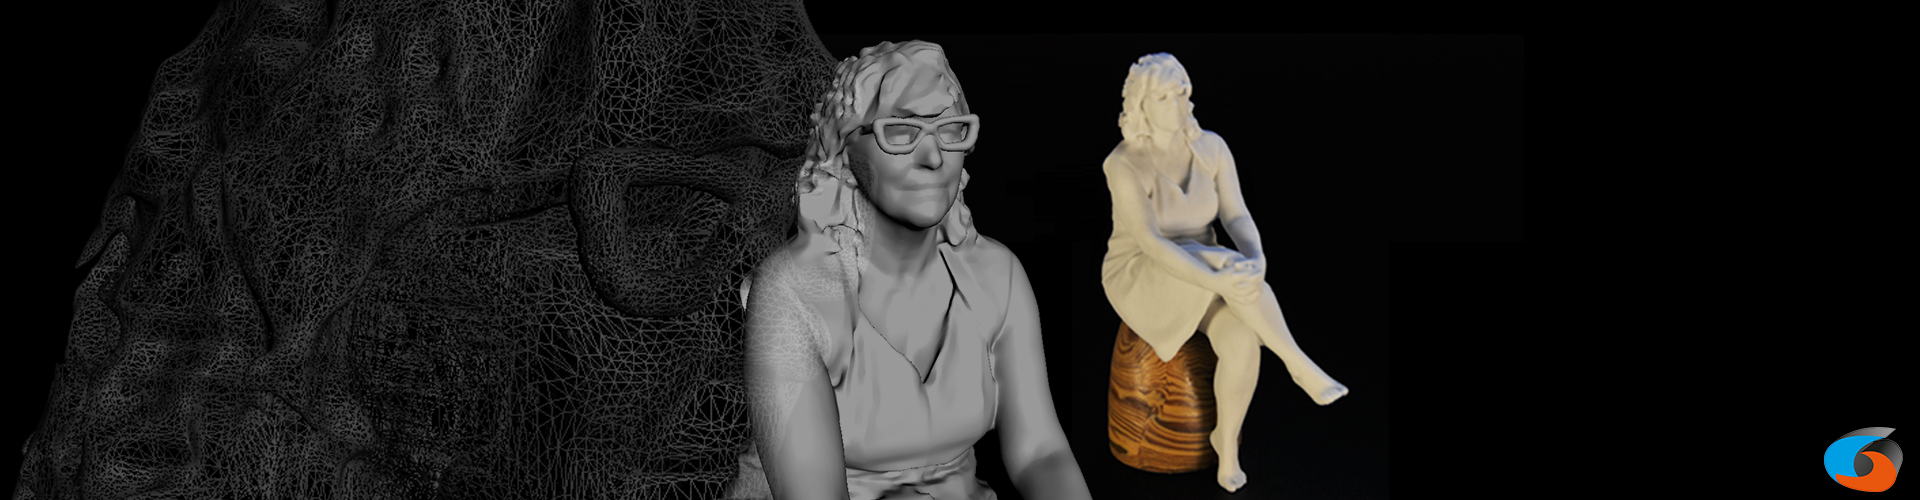 3D-beeld geprint in keramisch materiaal